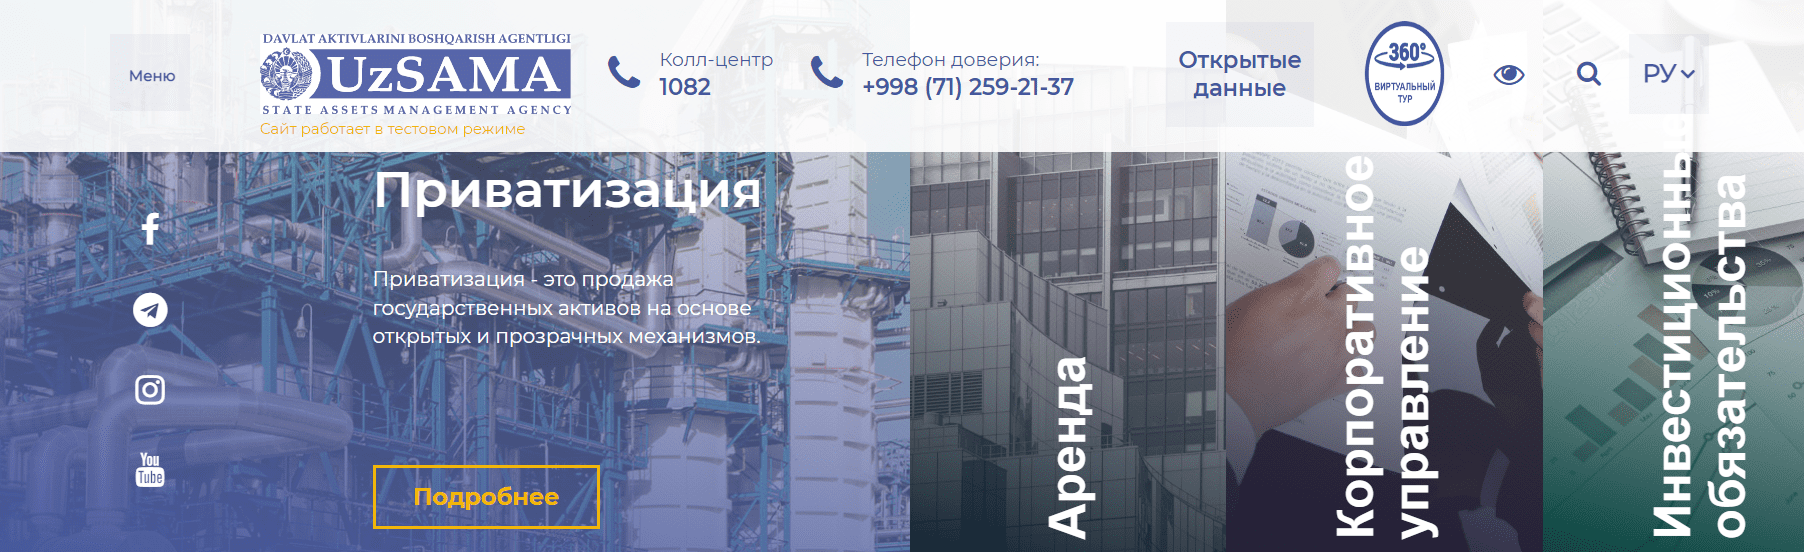 Агентство по управлению государственными активами (davaktiv.uz)